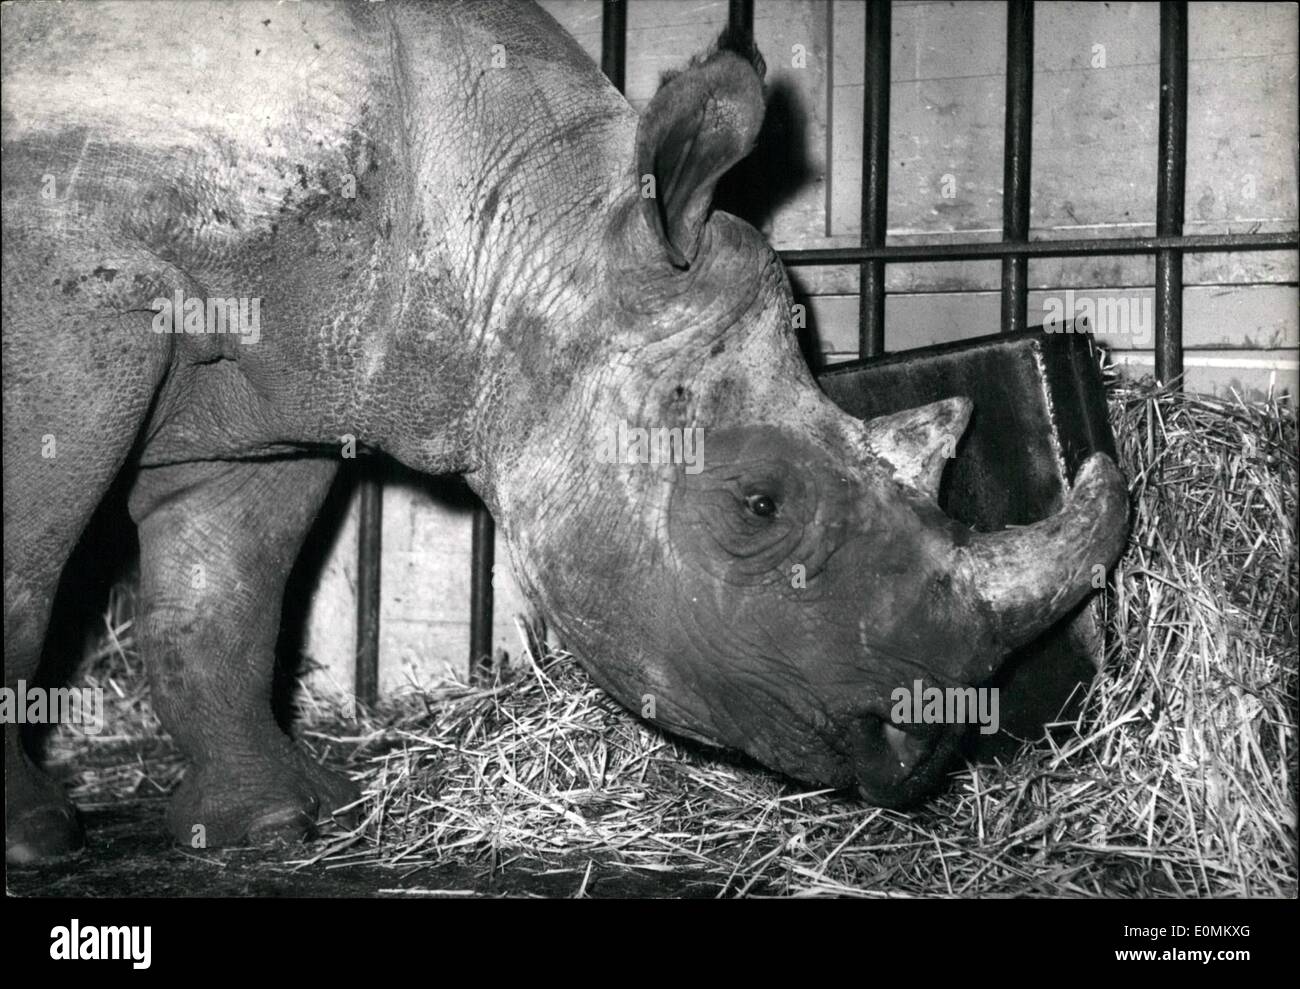 Ottobre 10, 1955 - Due-cornuto rhino per Parigi Circus. Un maschio di due-corno di rinoceronte fotografato nella sua gabbia al Cirque d'Hiver, il grande circo di Parigi dove il Sig. Rhino è di essere il nuovo e di grande attrazione per la riapertura del programma. Ott. 10/55 Foto Stock